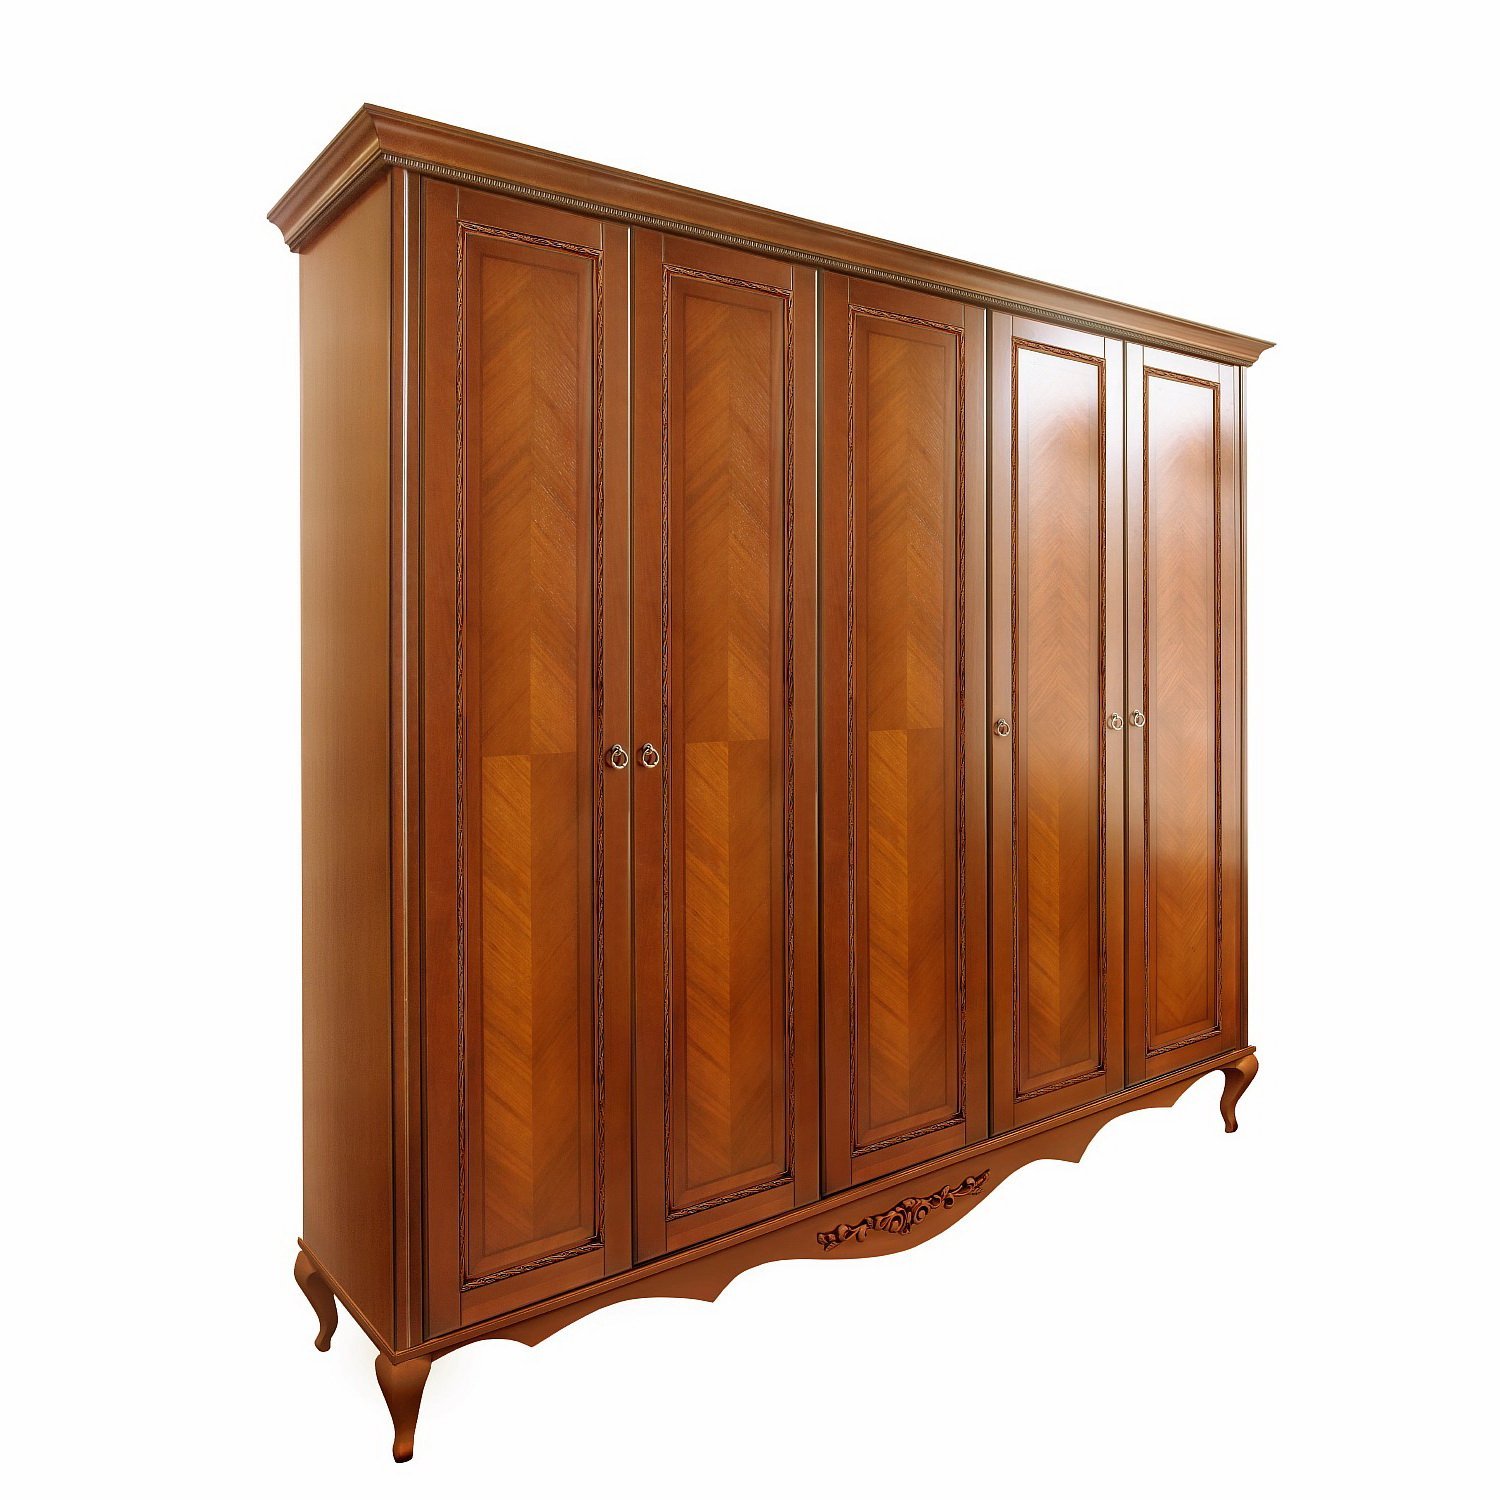 Шкаф платяной Timber Неаполь, 5-ти дверный 249x65x227 см, цвет: янтарь (Т-525Д/Y)Т-525Д